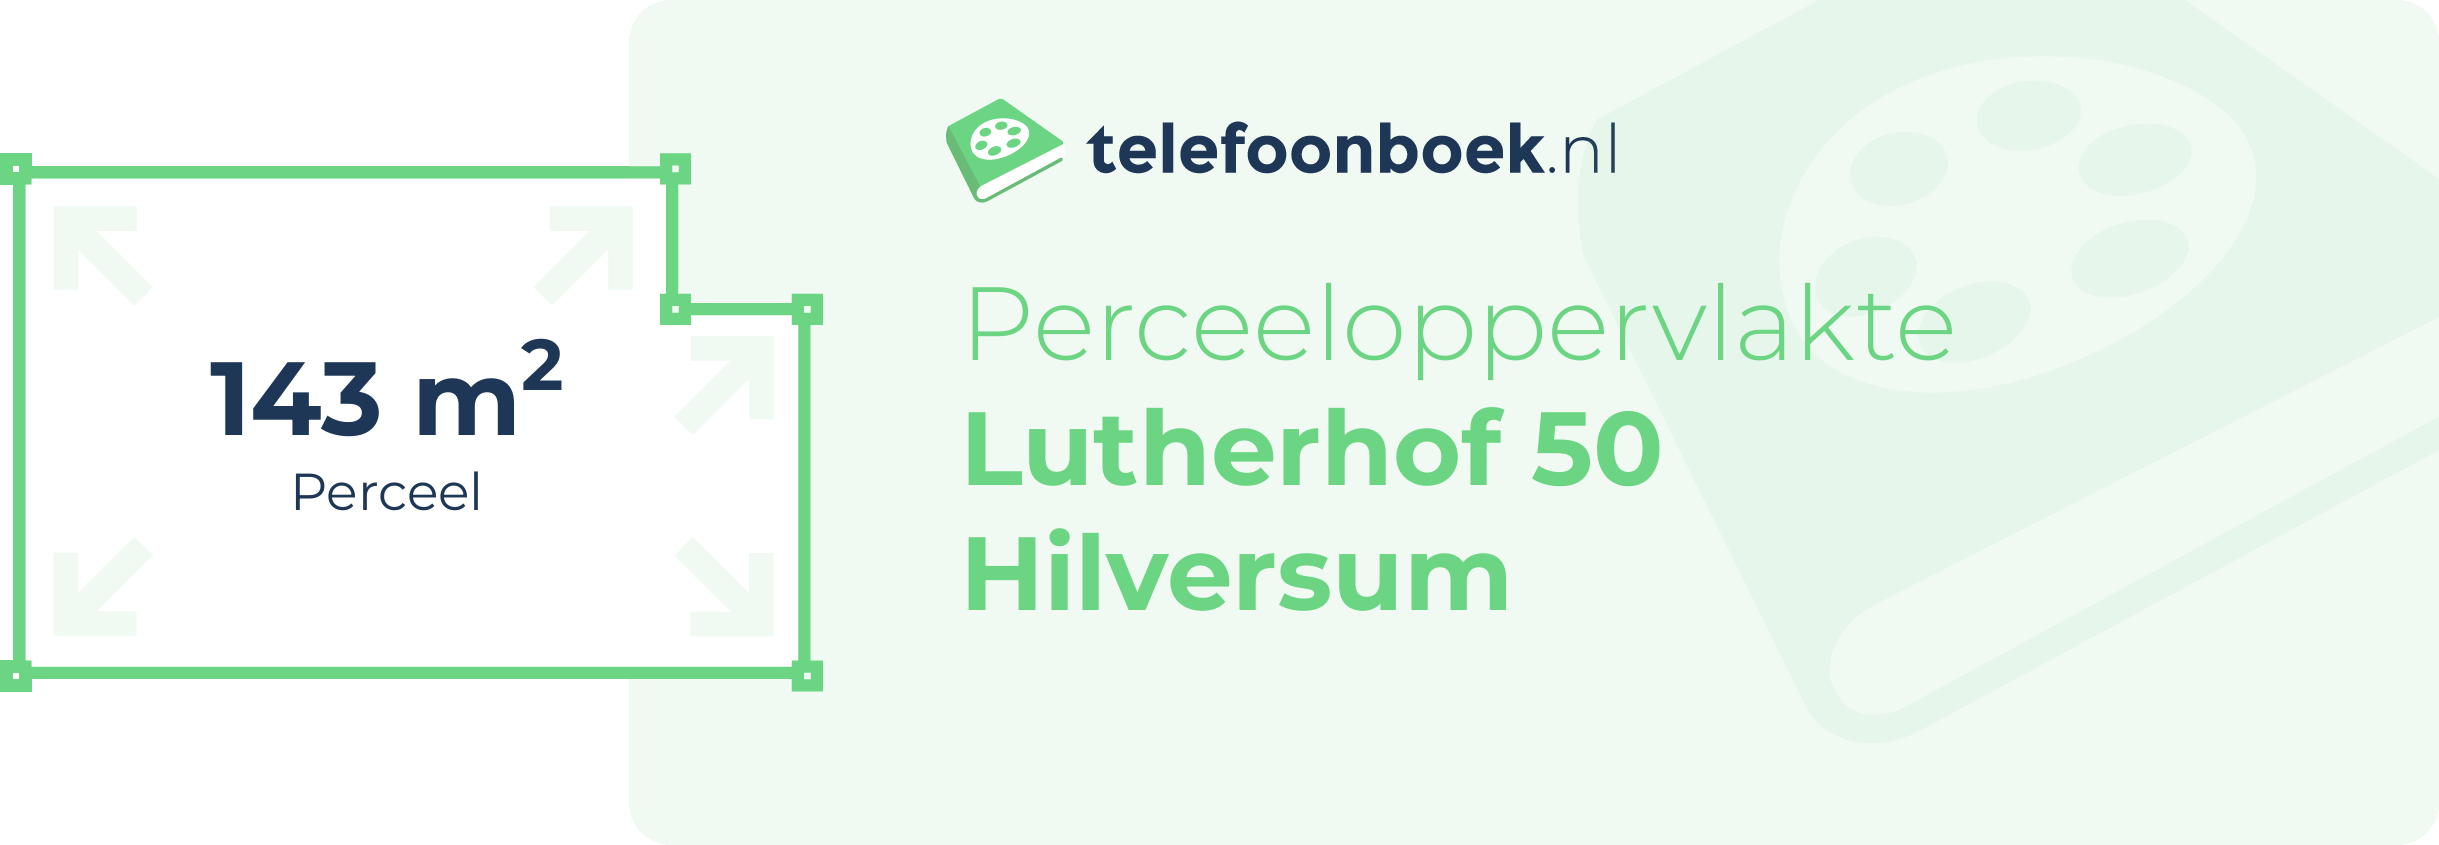 Perceeloppervlakte Lutherhof 50 Hilversum